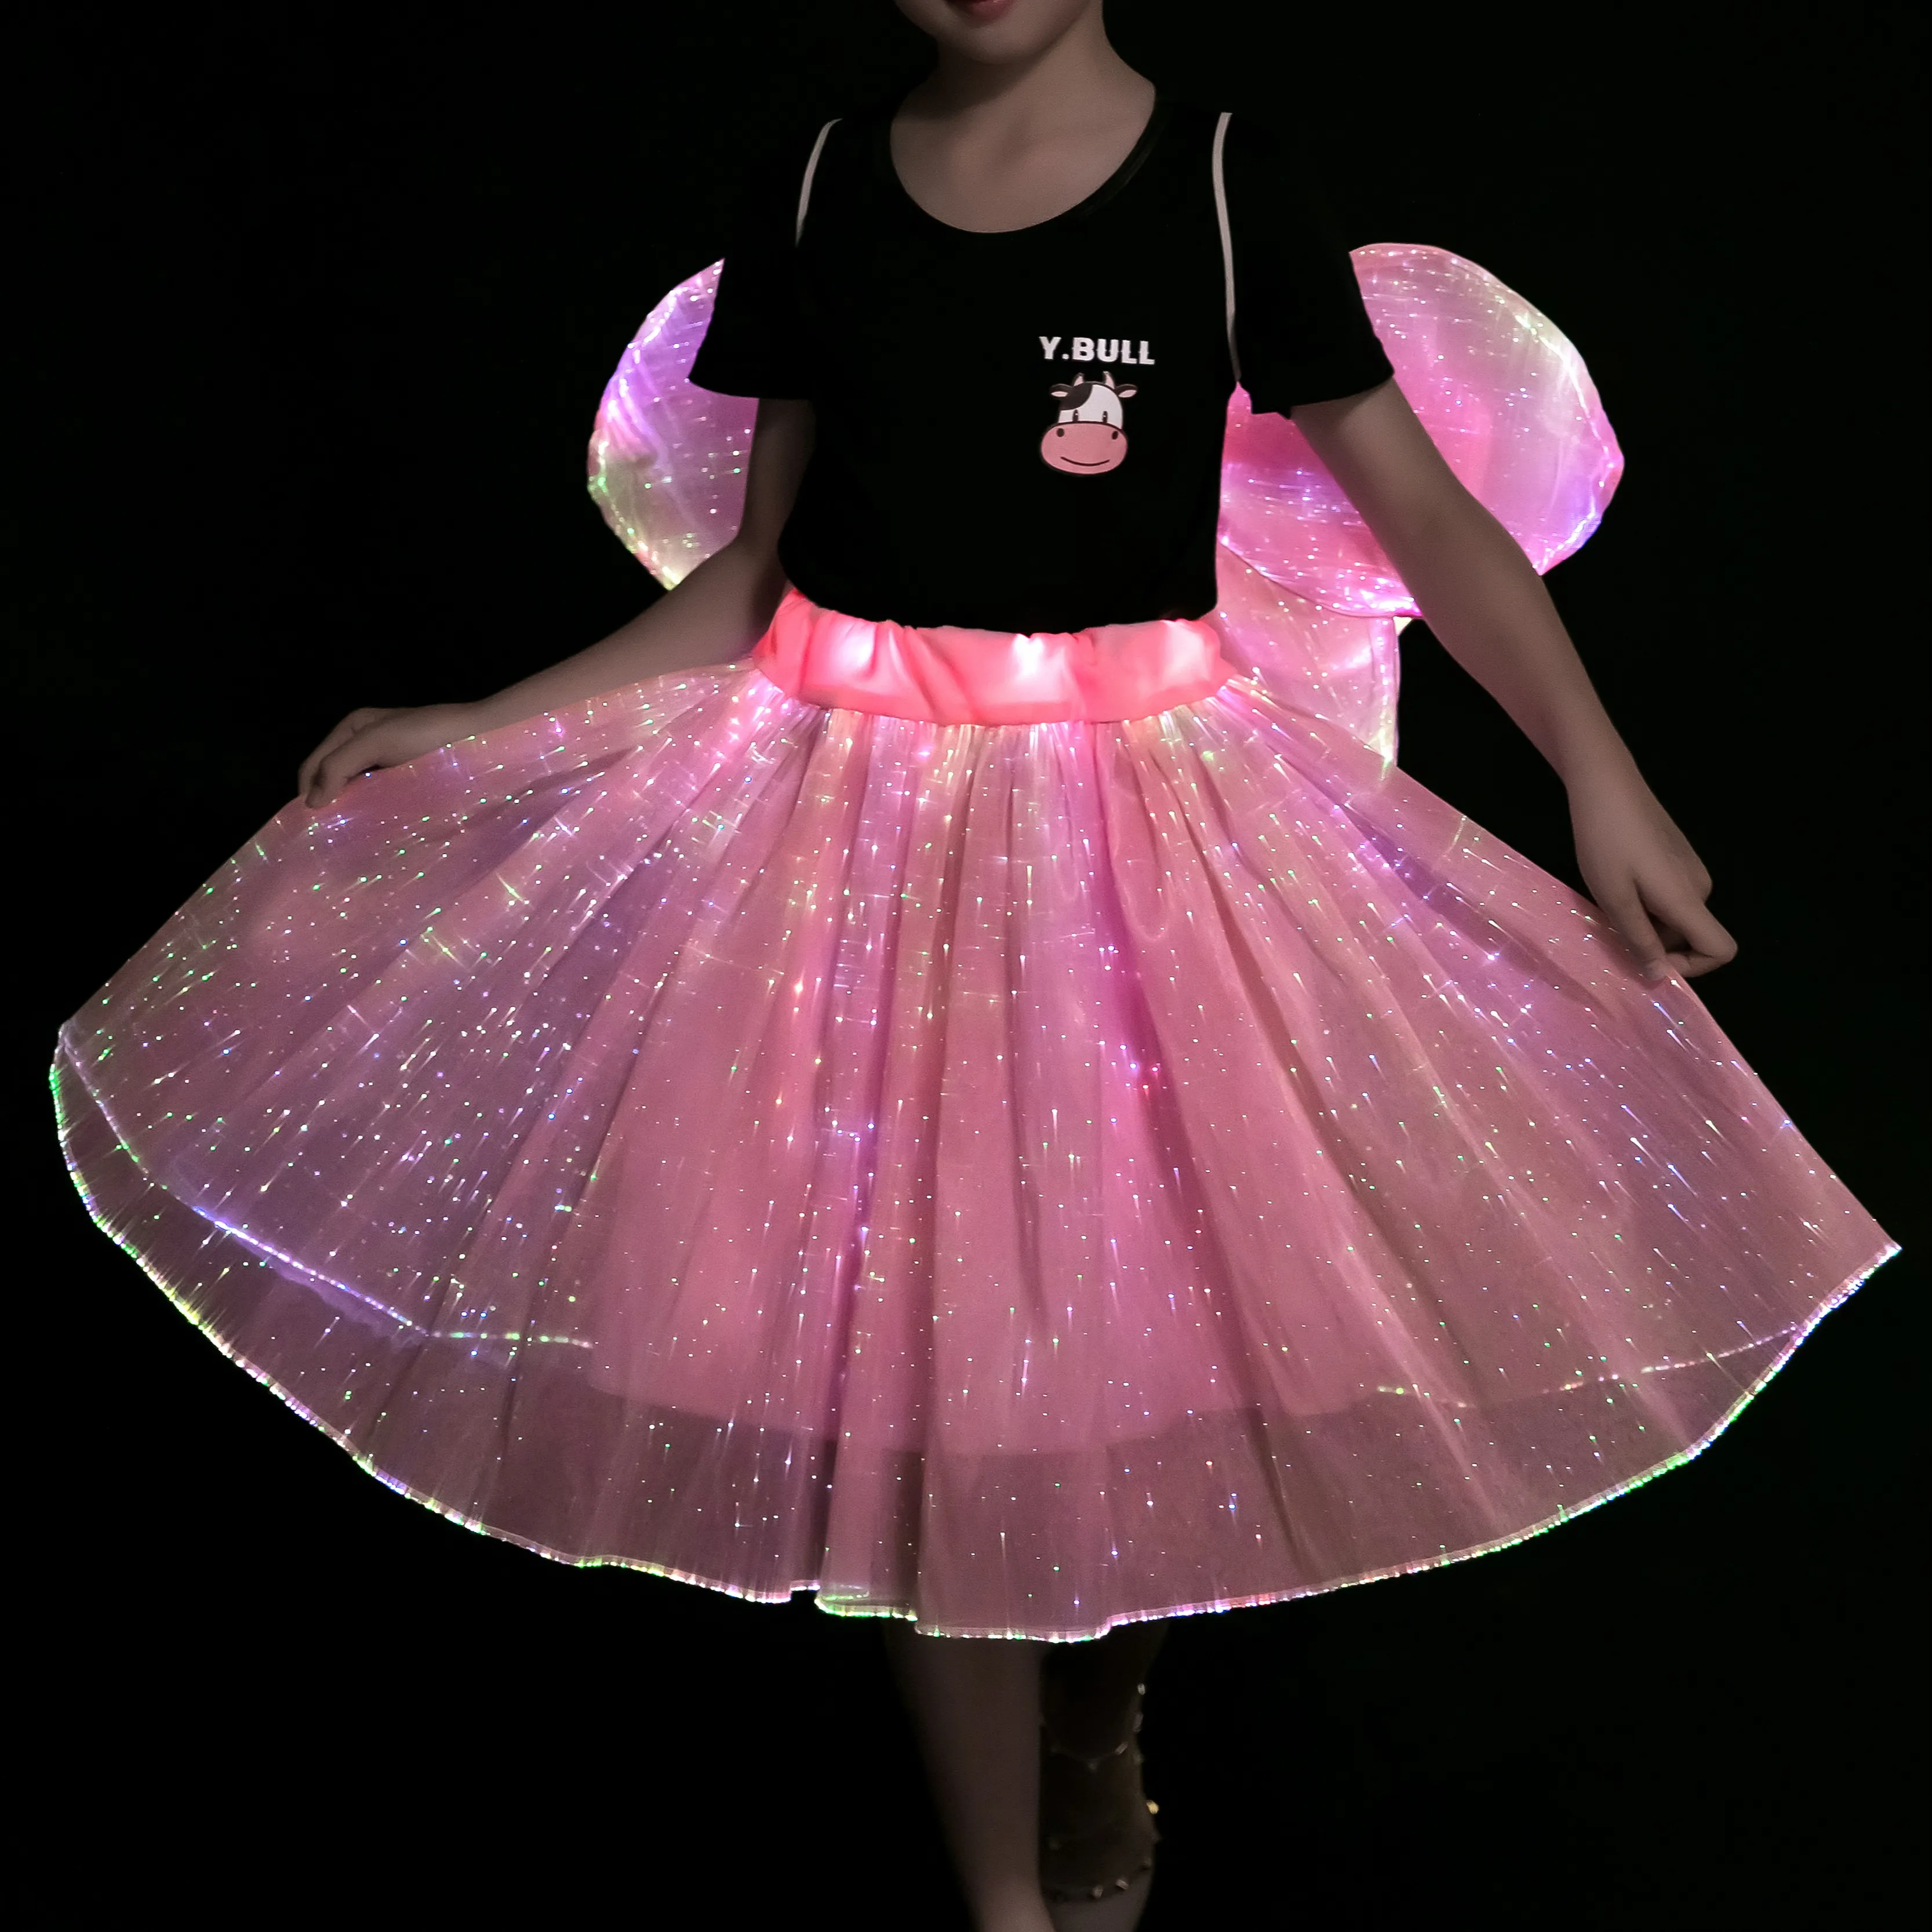 LED-Leuchte helles leuchtende Glasfaser-Mädchen rosa schönes Rock Schmetterling mit Flügeln Dekoration Kleid für Kinder Bühnen-Show